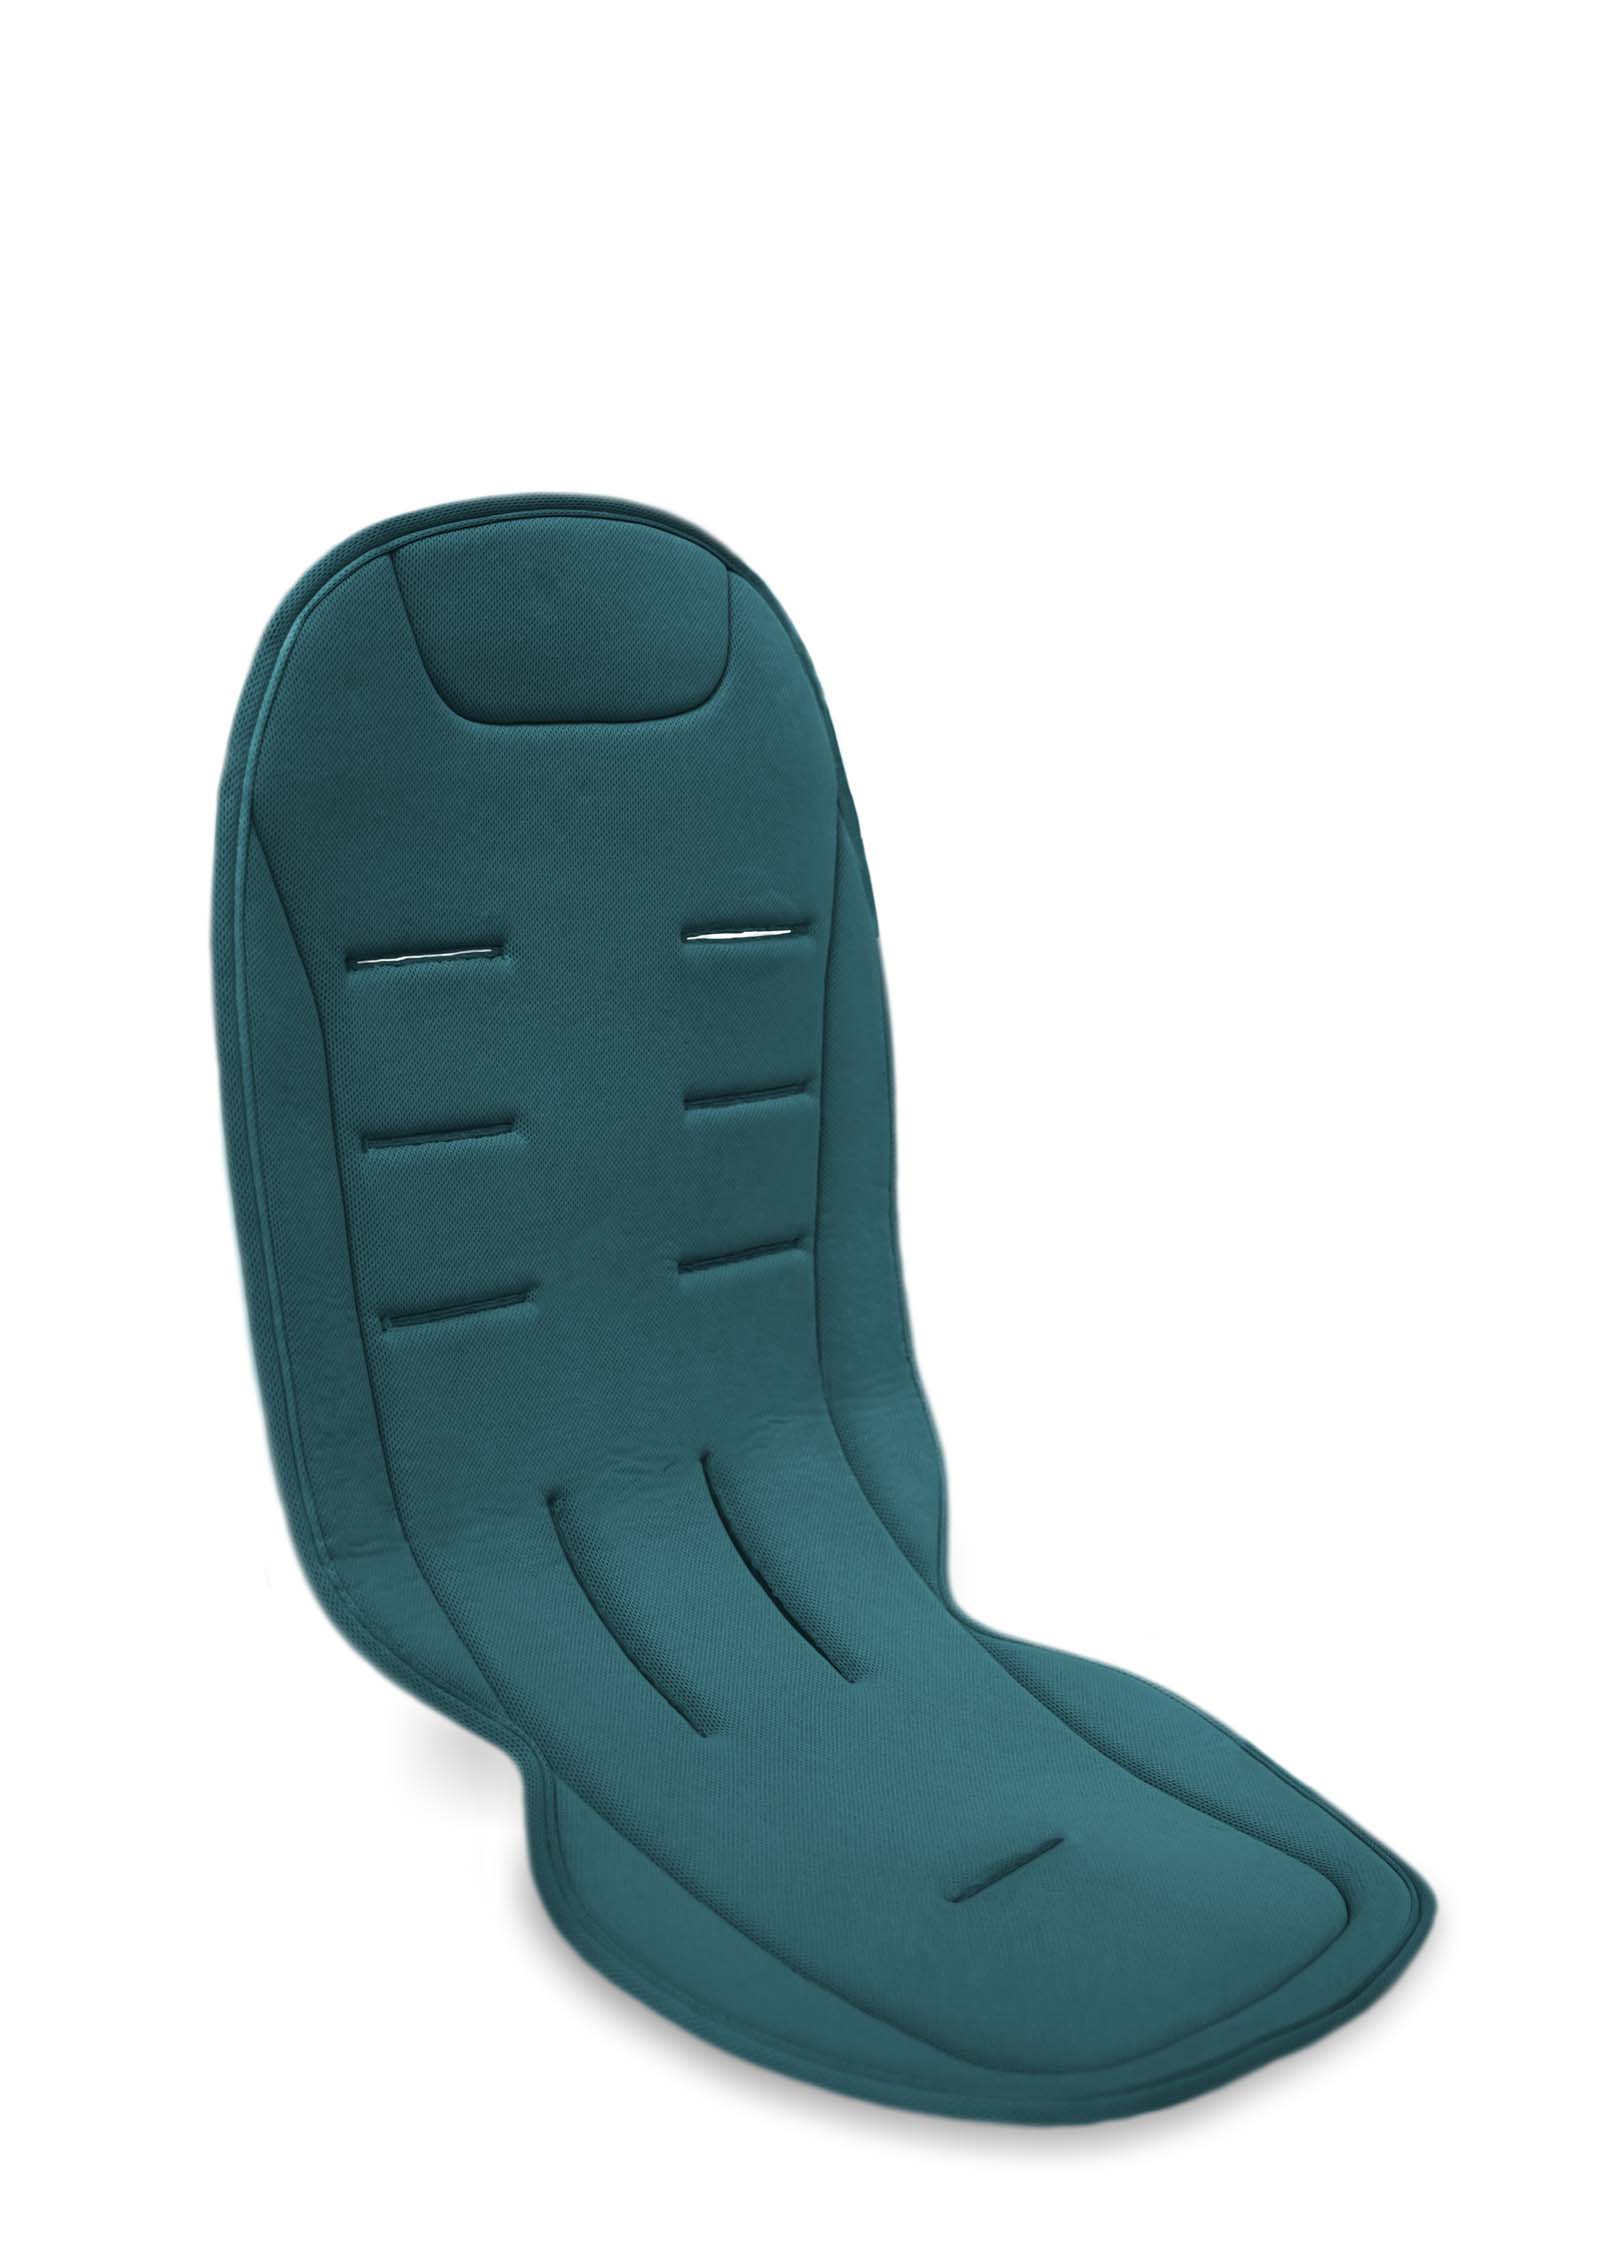 Komfort Sitzauflage Grün